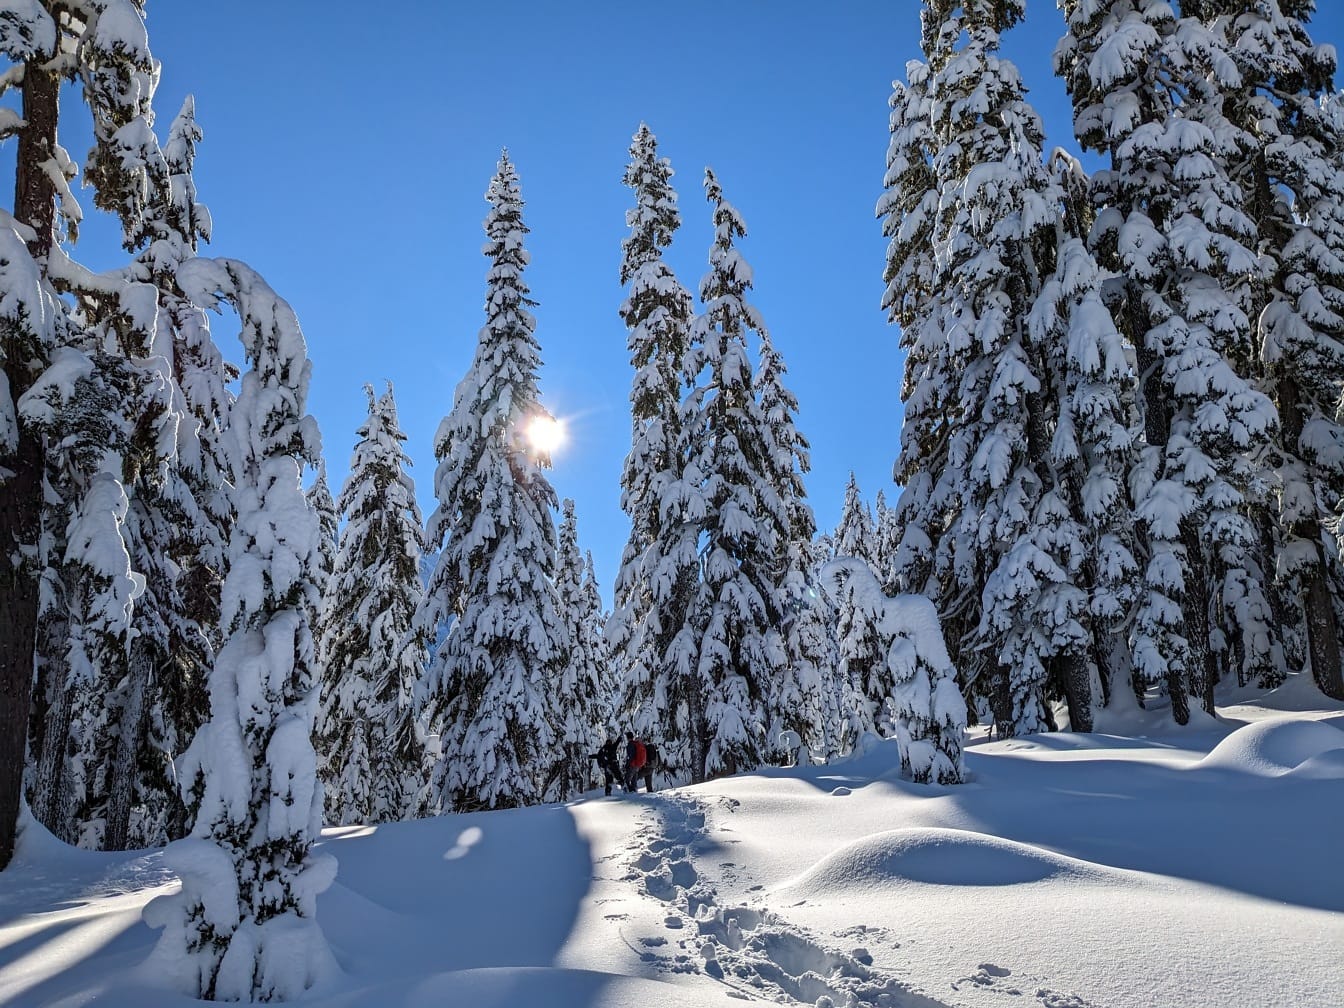 Casal de montanhistas caminhando através da neve profunda na floresta nevada